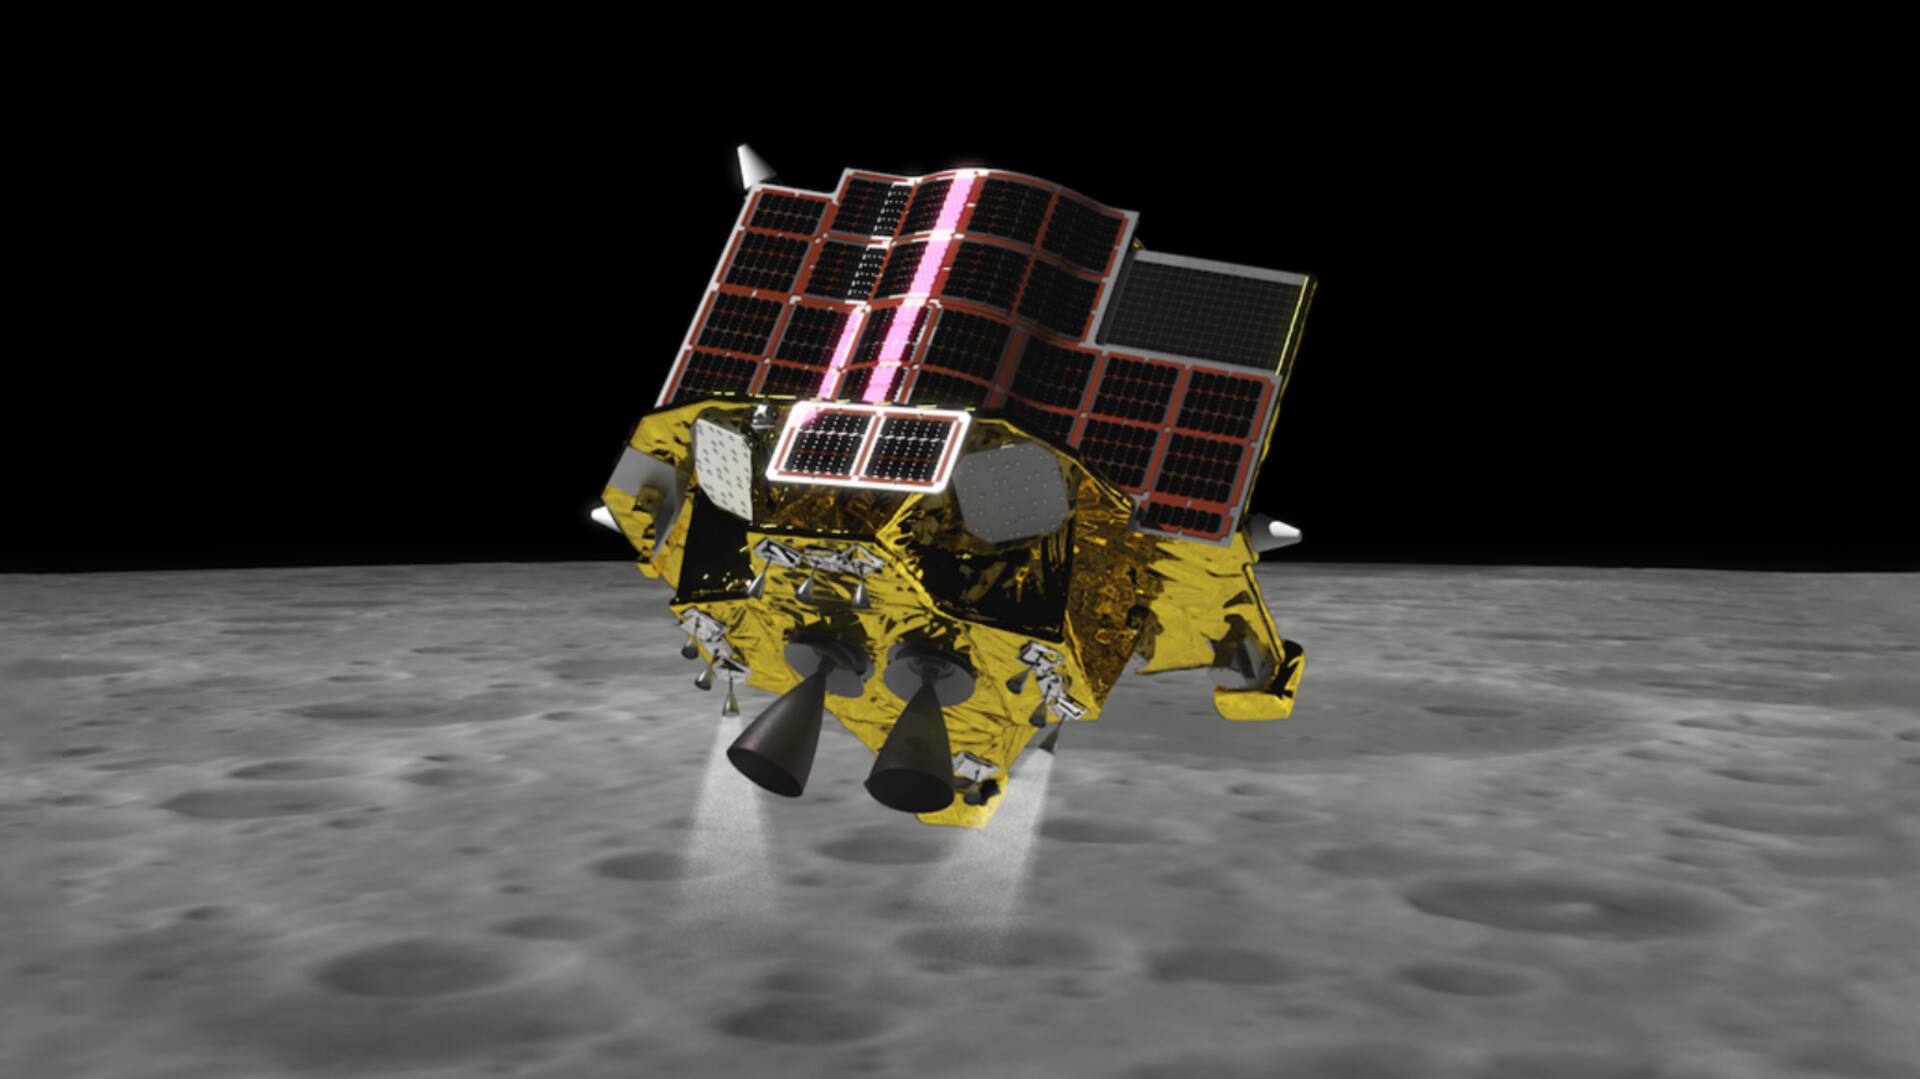 जापान 26 अगस्त को लॉन्च करेगा XRISM अंतरिक्ष यान और SLIM लैंडर, जानें क्या है मिशन